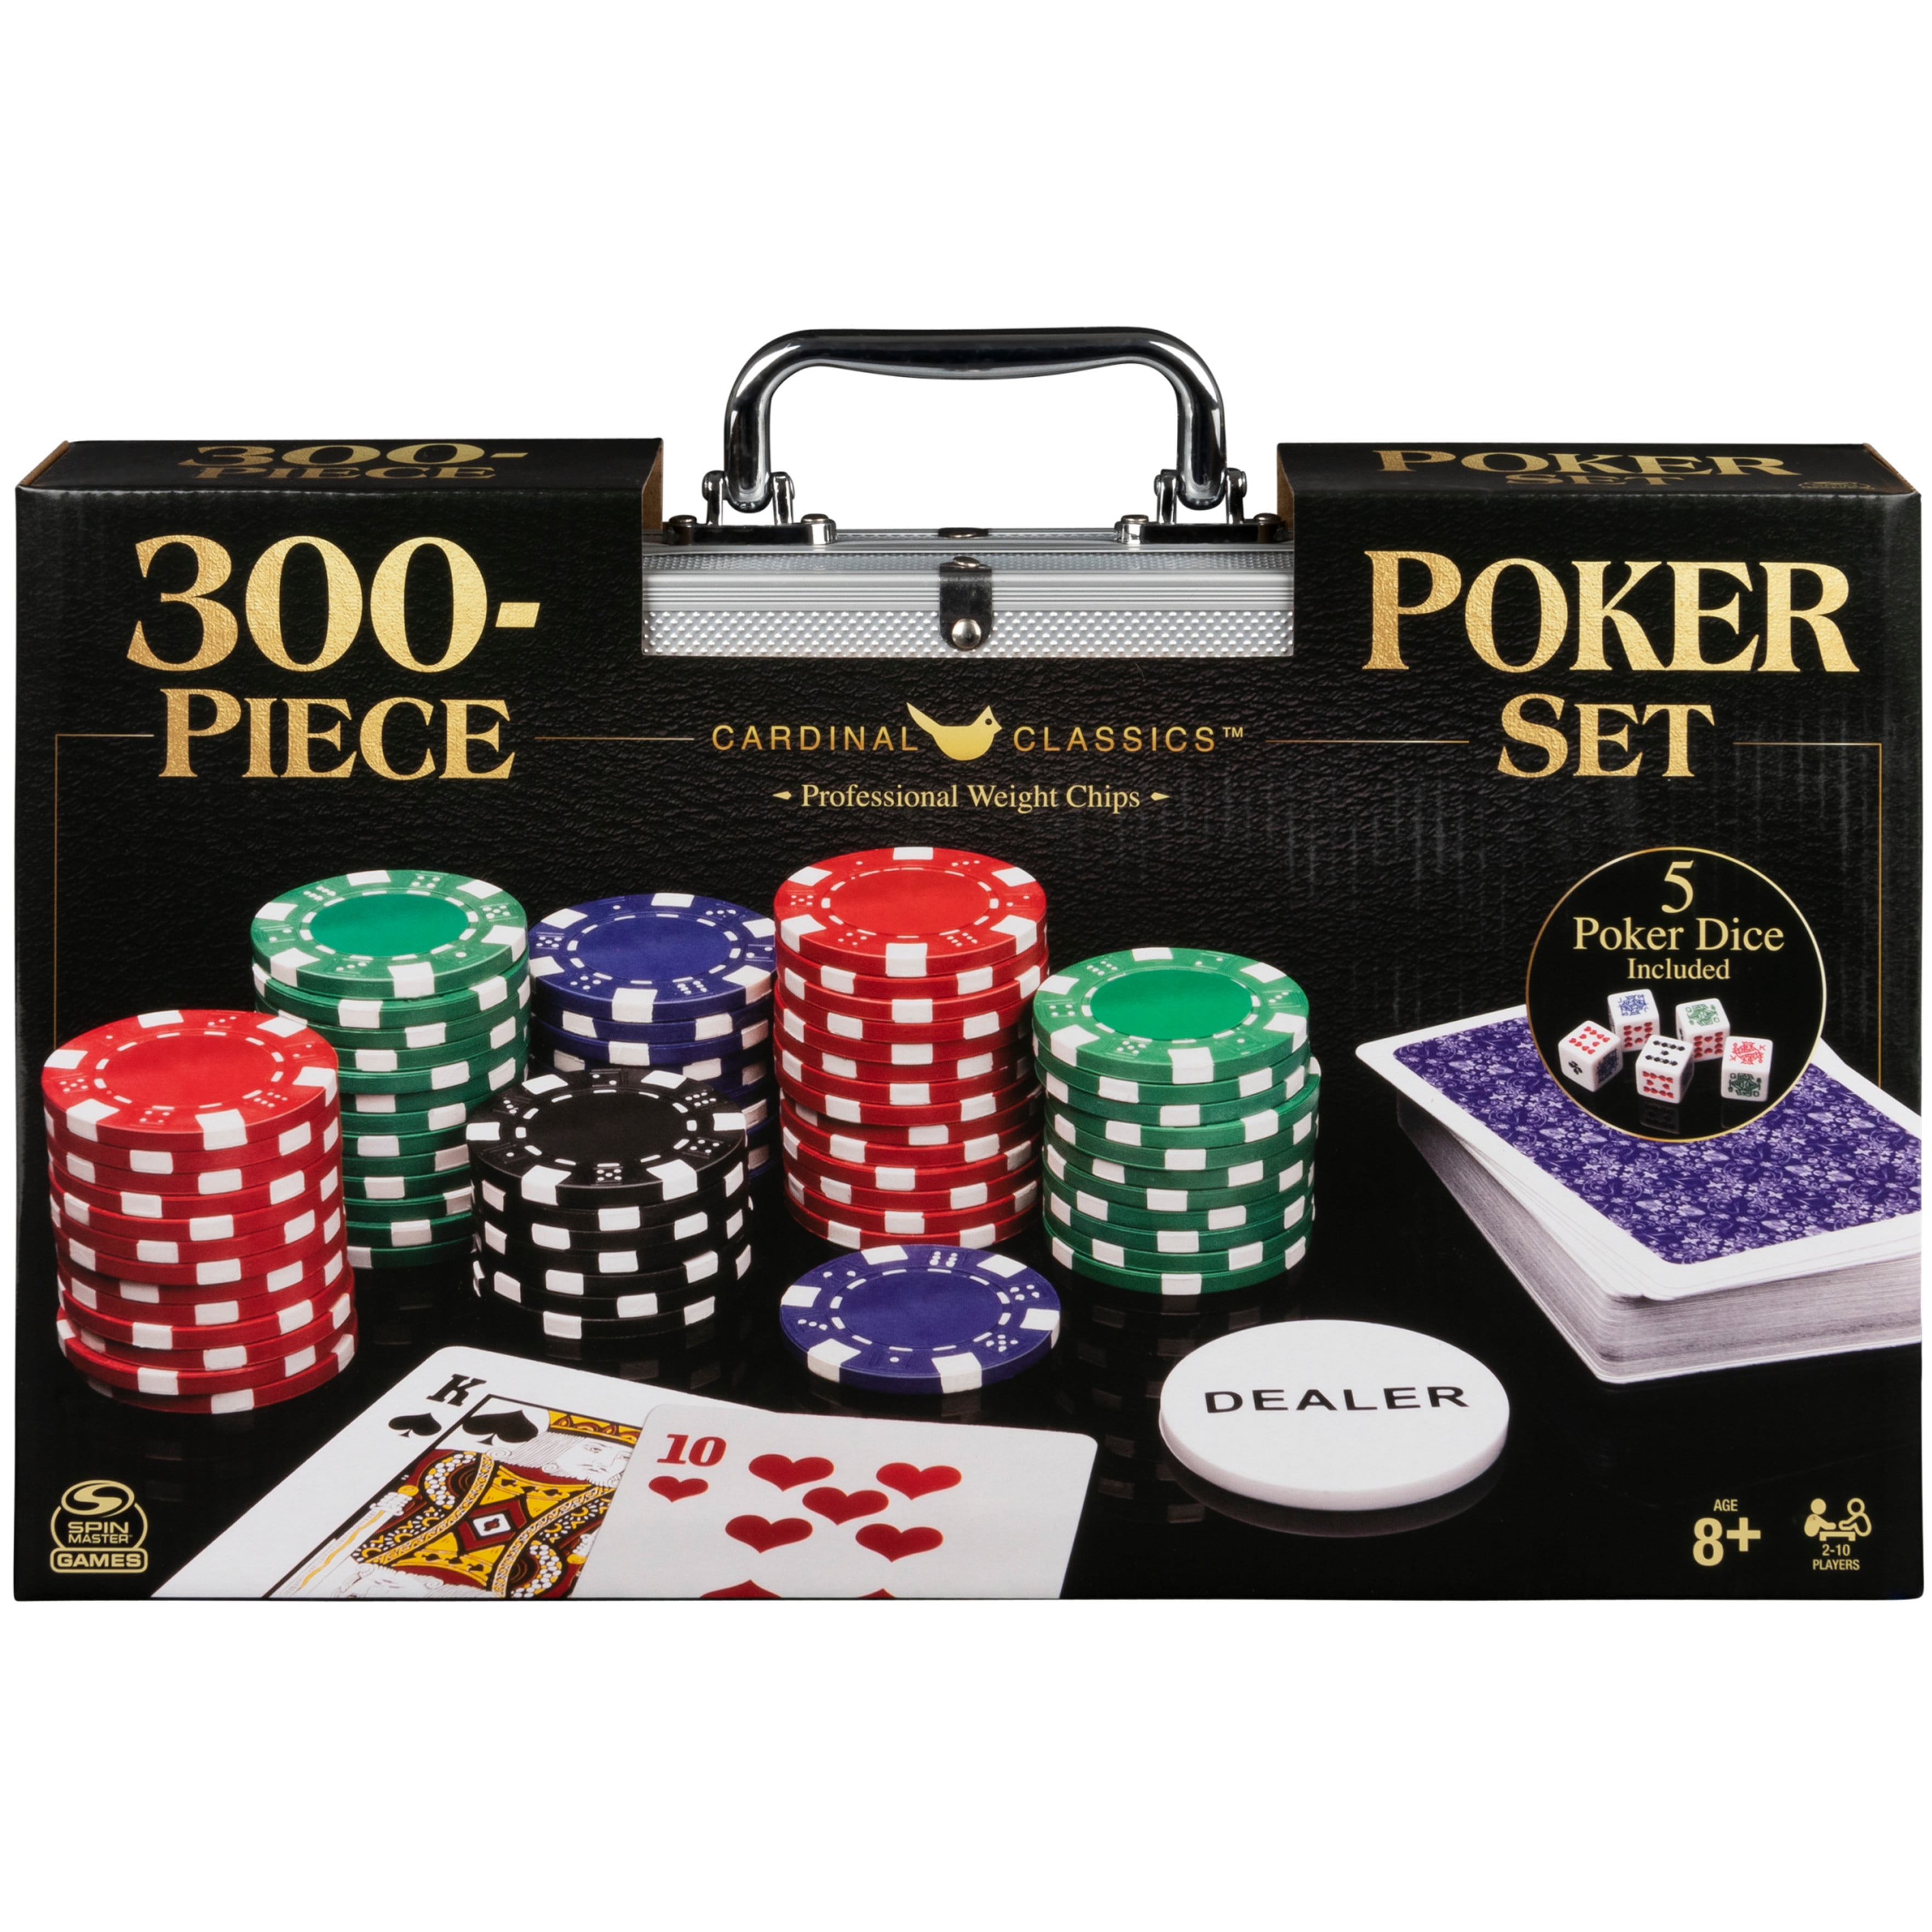 4 pcs Lot of WORLD POKER TOUR Casino Gaming Chips Set FREE Las Vegas Chip 